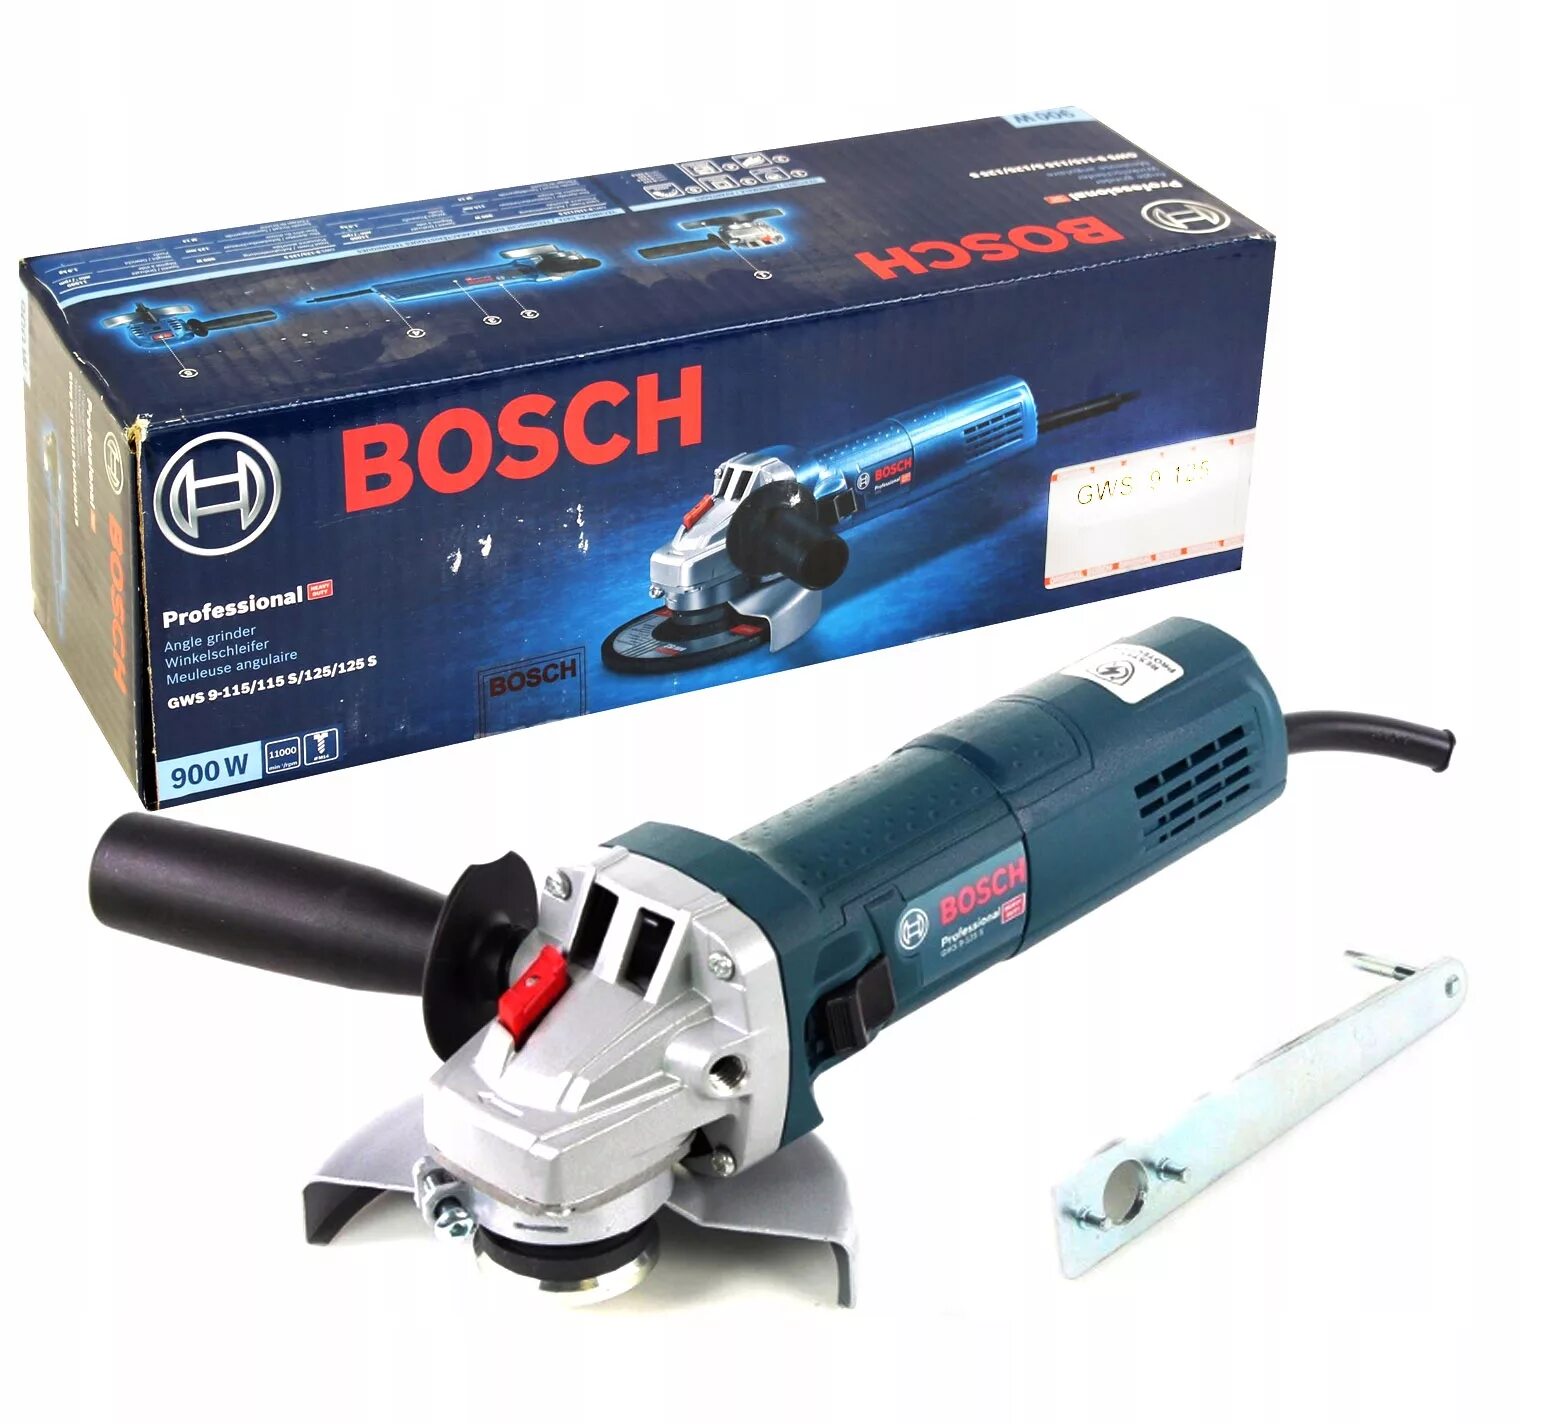 Bosch GWS 9-125 S. УШМ Bosch GWS 9-125 (0601396022). Болгарка бош 9-125s. УШМ Bosch GWS 9-125. Bosch 9 125 купить